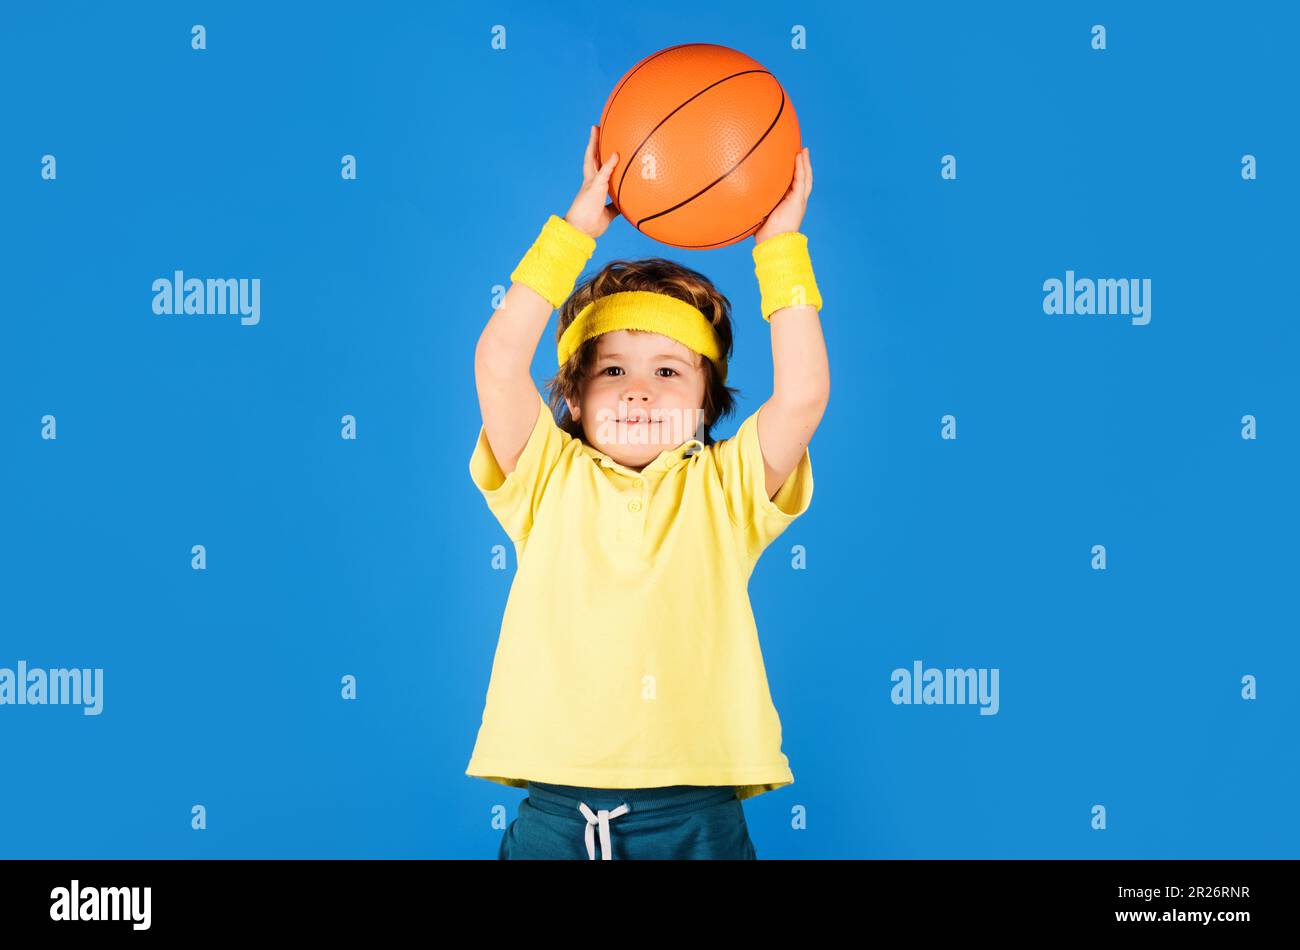 https://c8.alamy.com/compes/2r26rnr/pequeno-basketballer-lanzando-pelota-de-baloncesto-nino-deportivo-en-uniforme-jugando-baloncesto-deporte-profesional-entrenamiento-de-baloncesto-sonriendo-2r26rnr.jpg